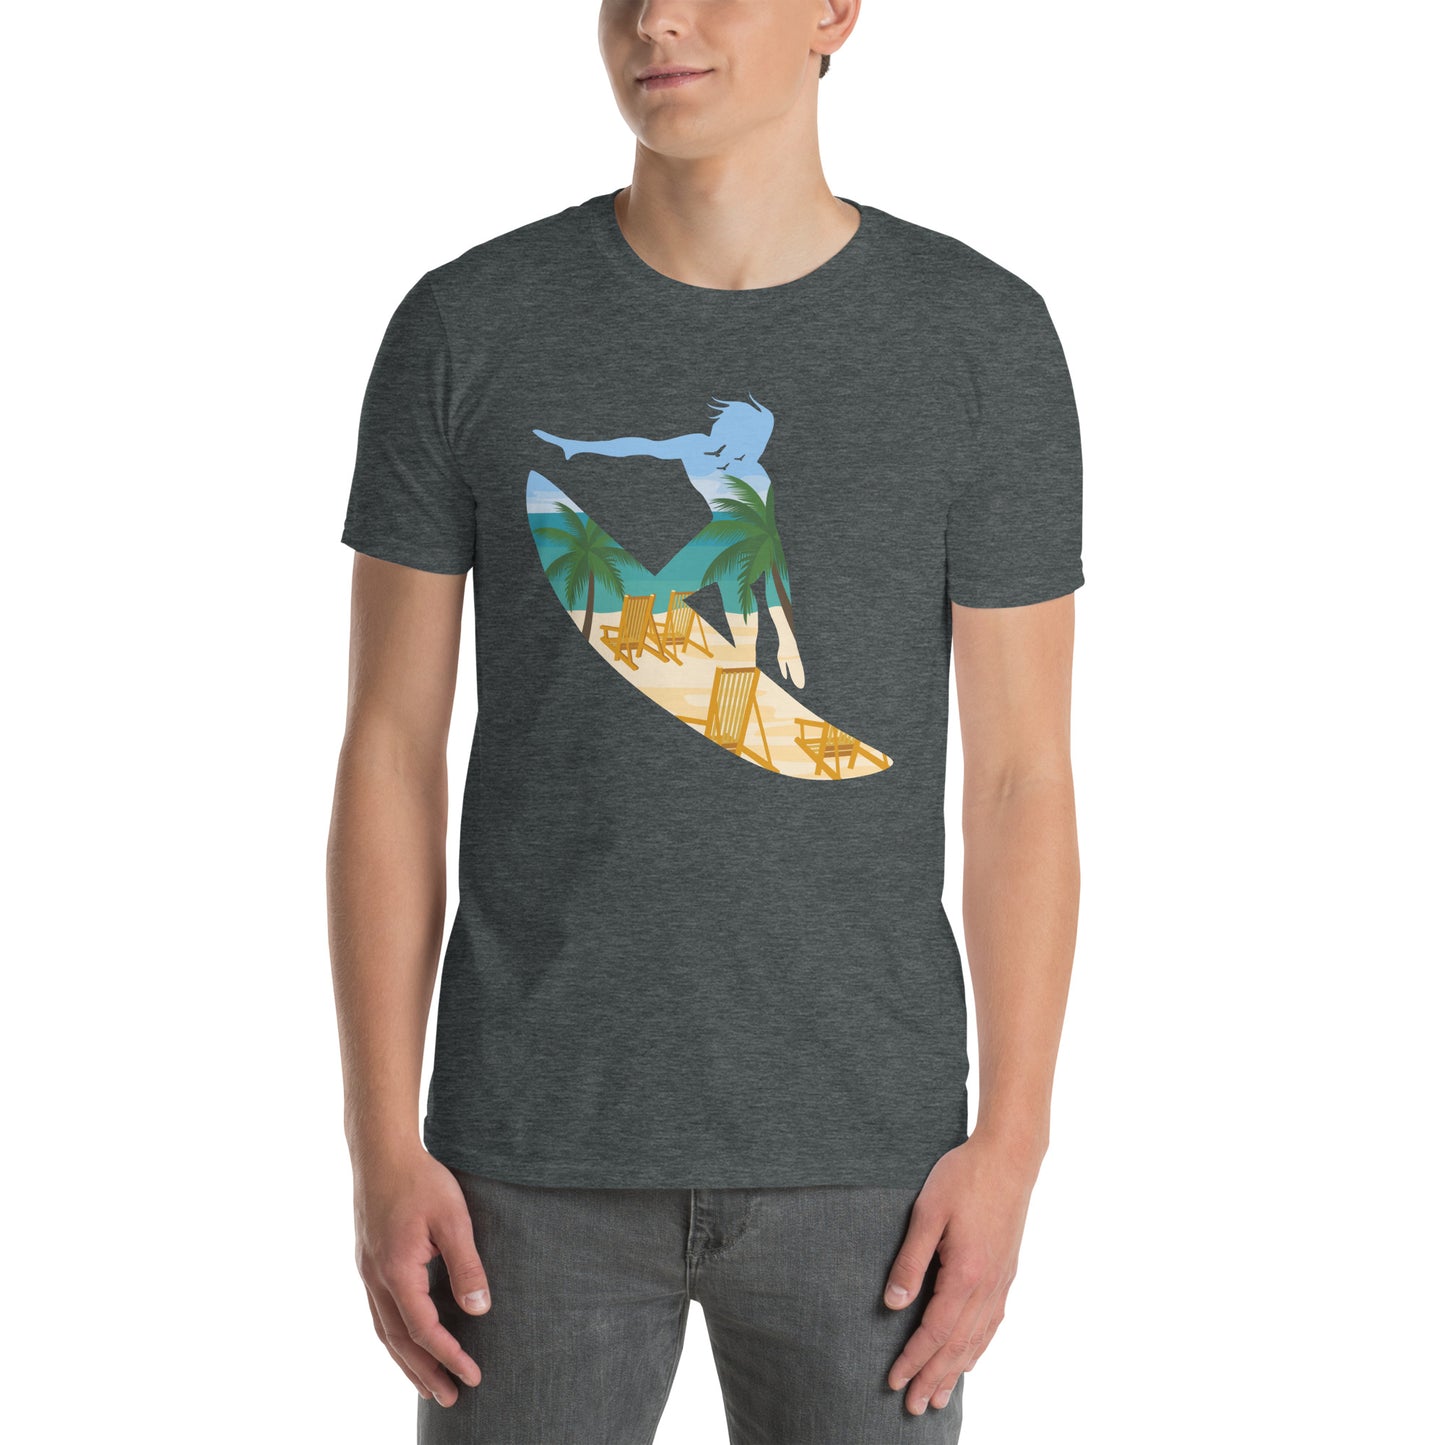 Beach Surfer Silhouette Shirt